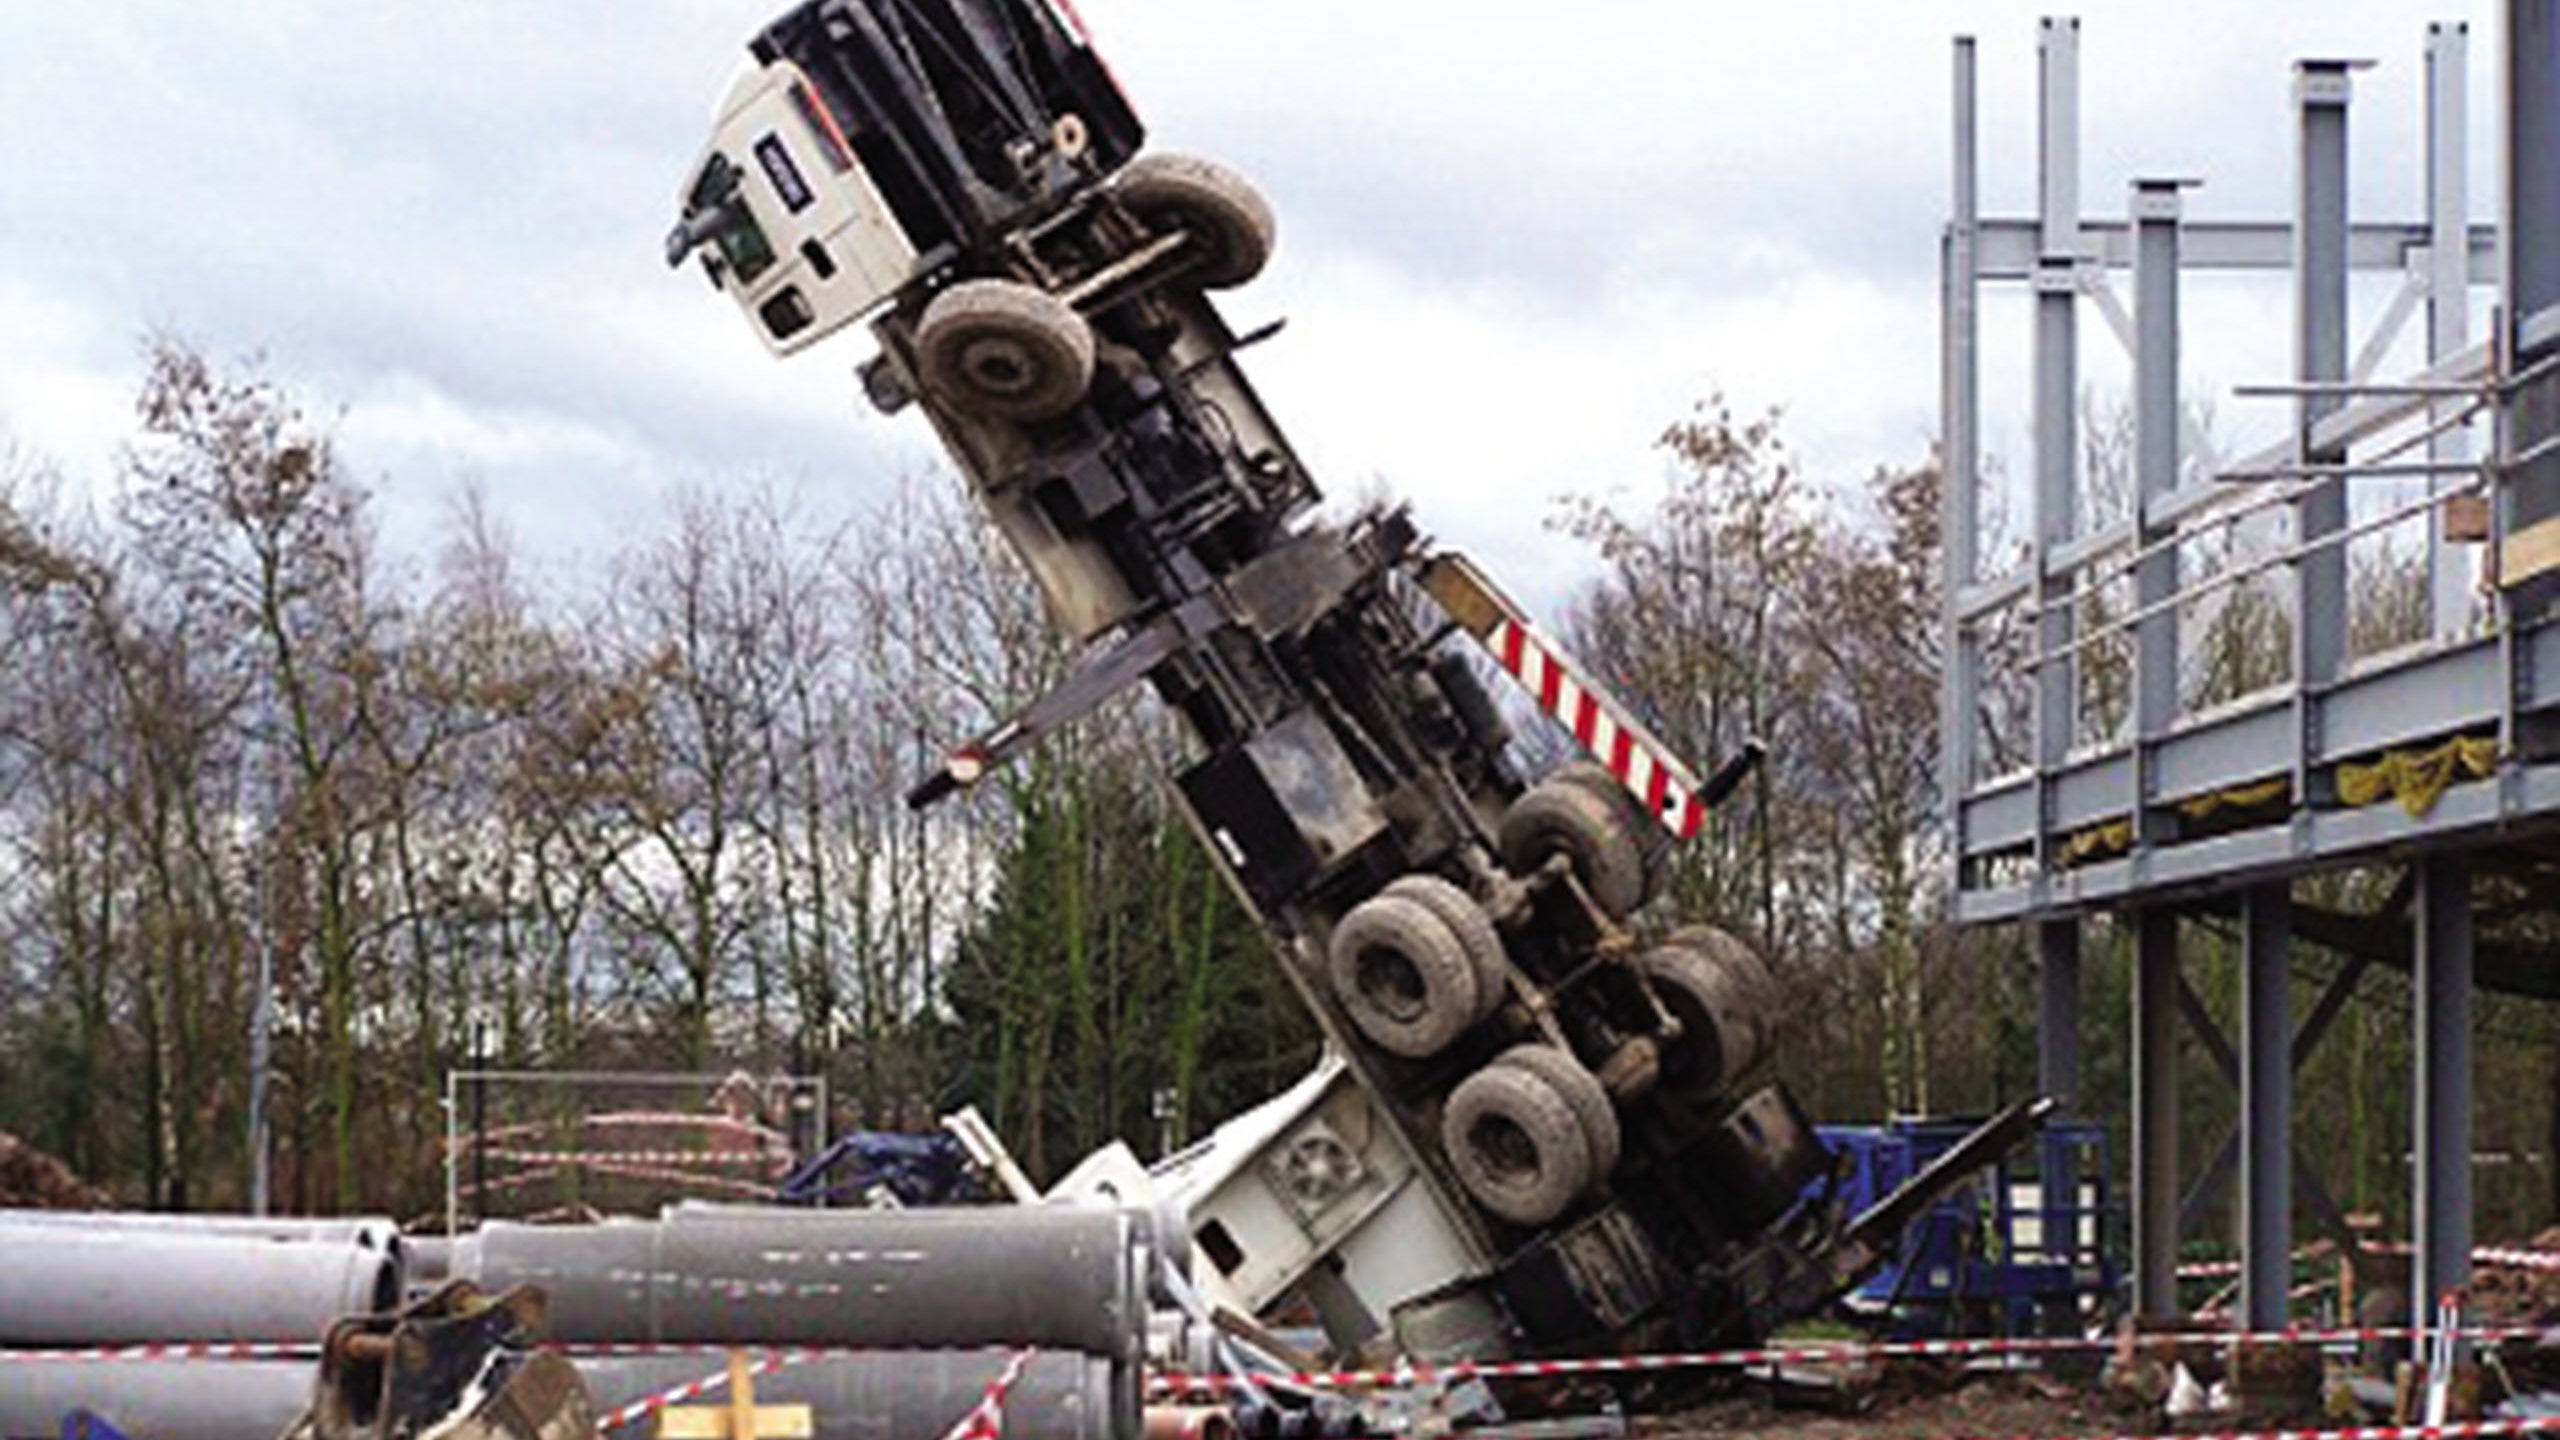 Mobile crane collapse event